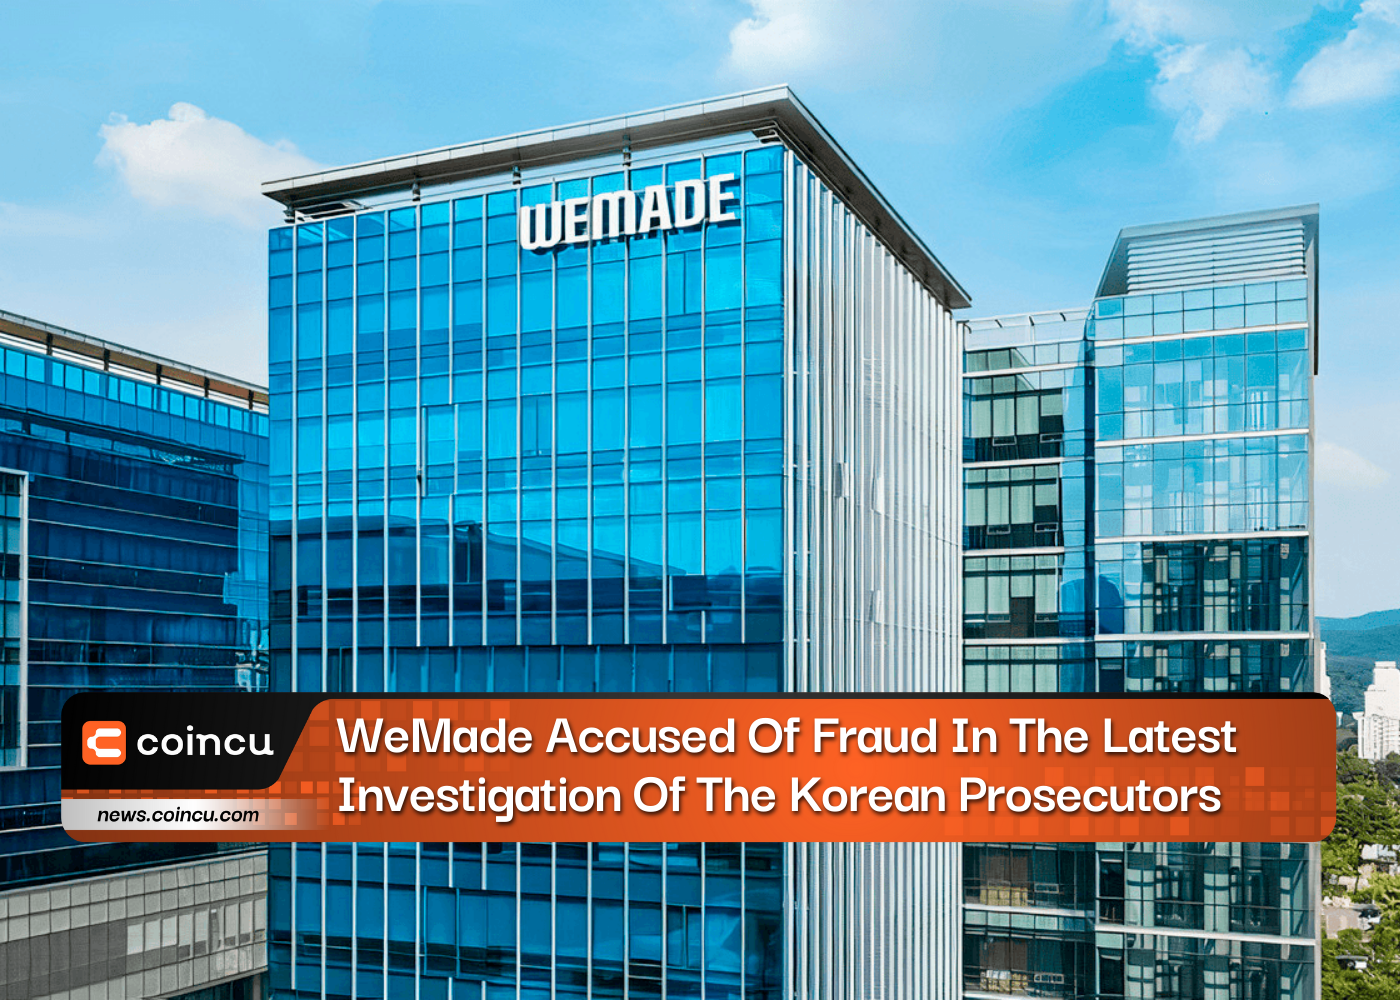 ÚLTIMA HORA: WeMade acusado de fraude en la última investigación de los fiscales coreanos